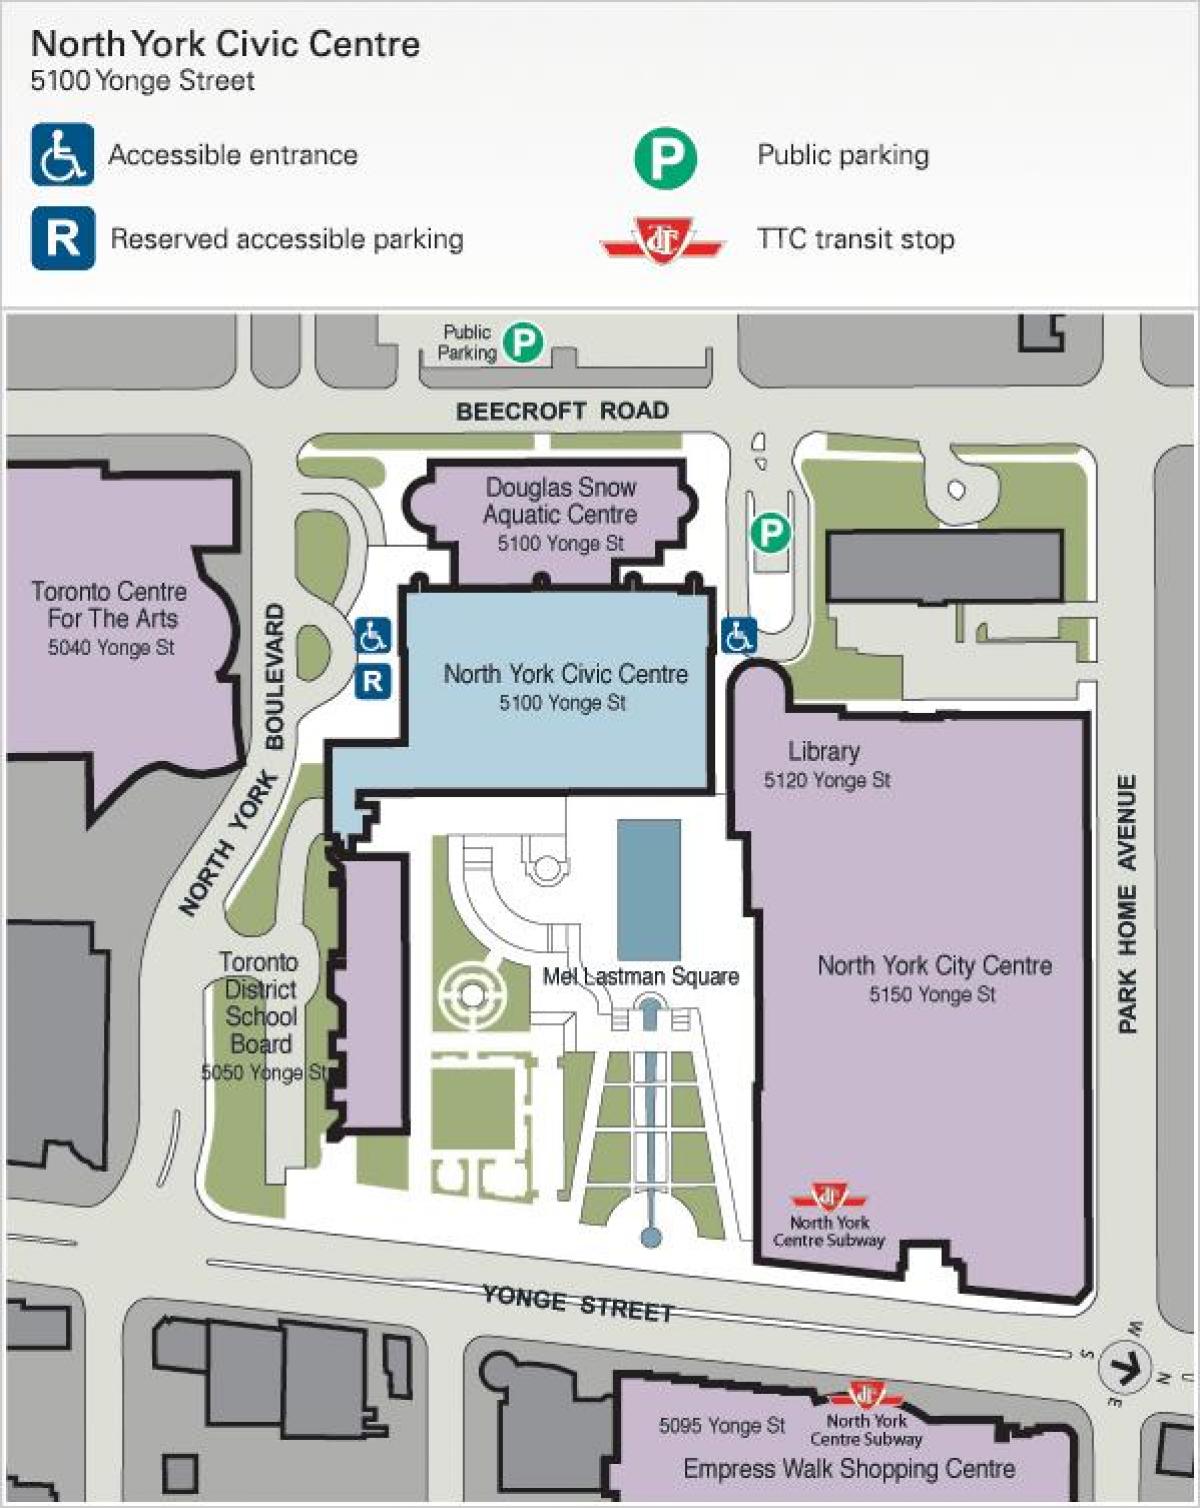 Mappa di Toronto Centre for the Arts, parcheggio